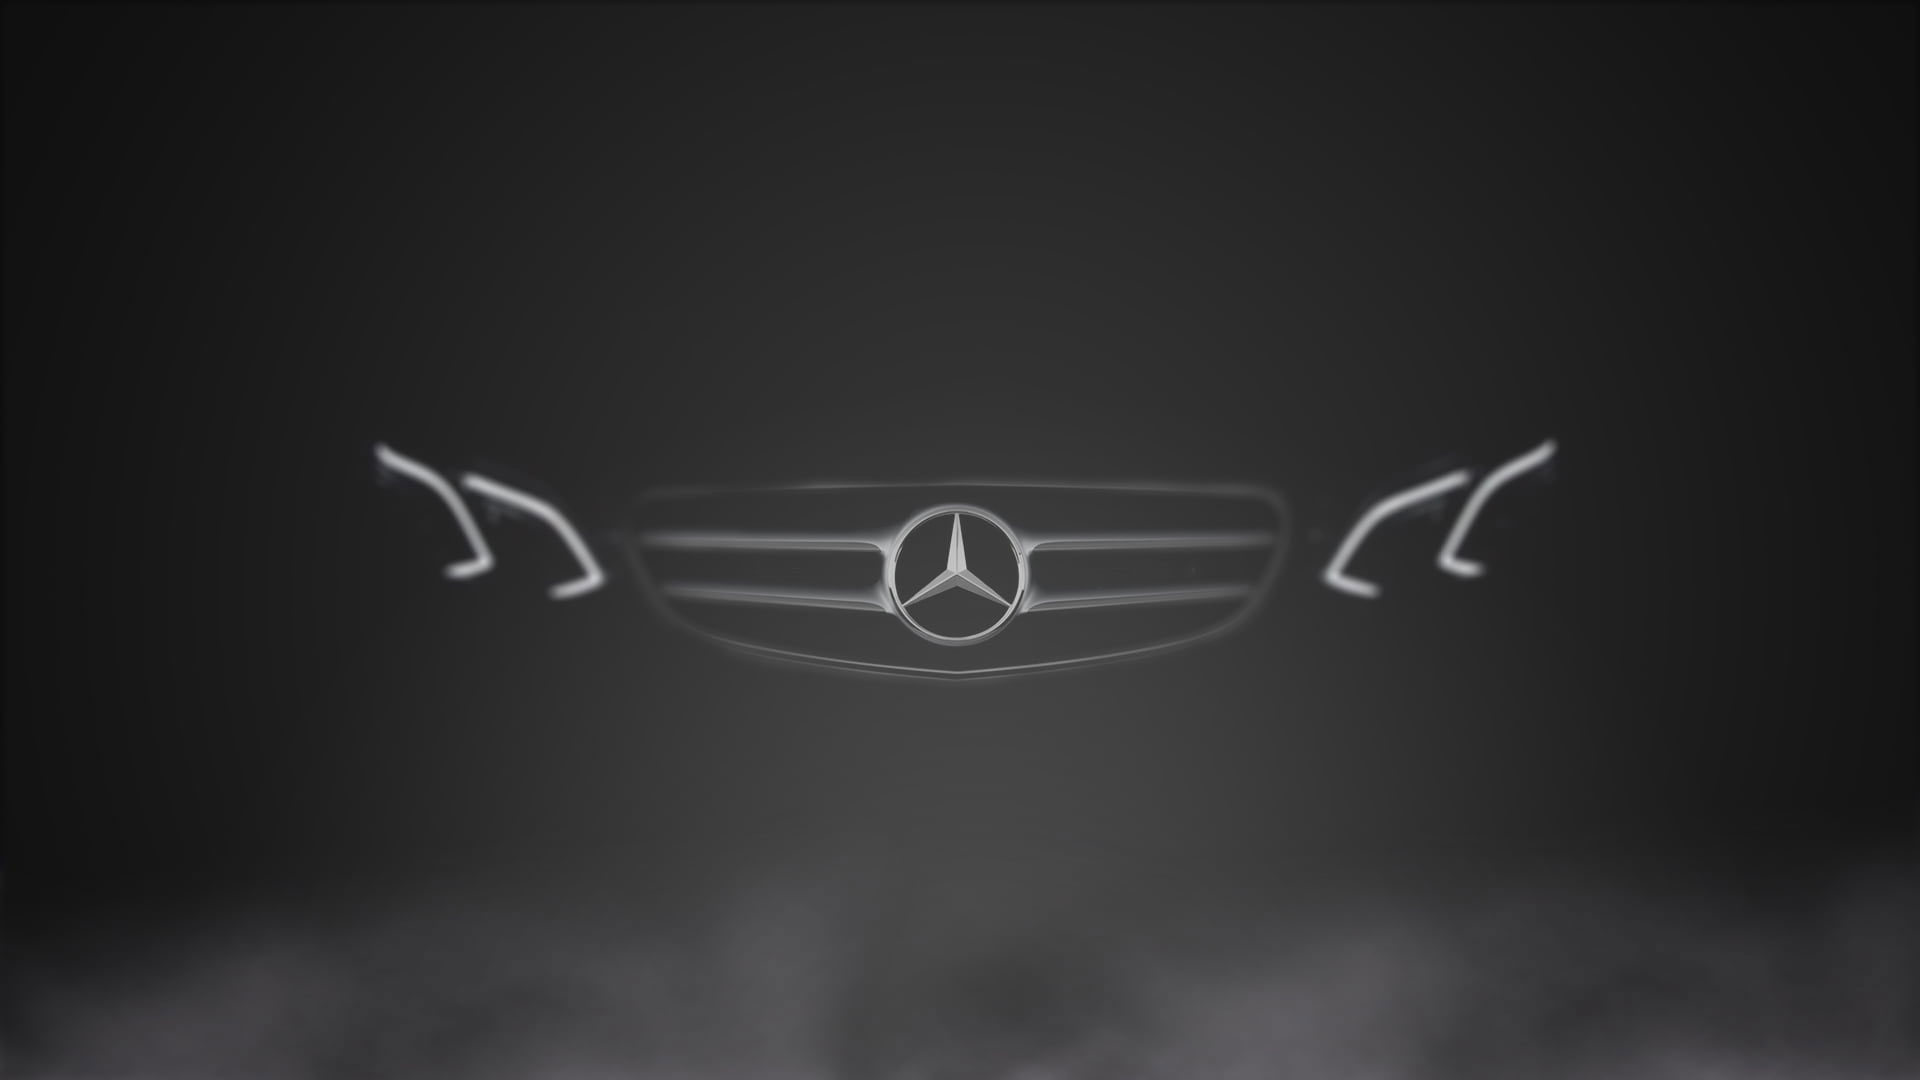 Wallpaper Mercedes Benz E Class, Black Background - Wallpaperforu